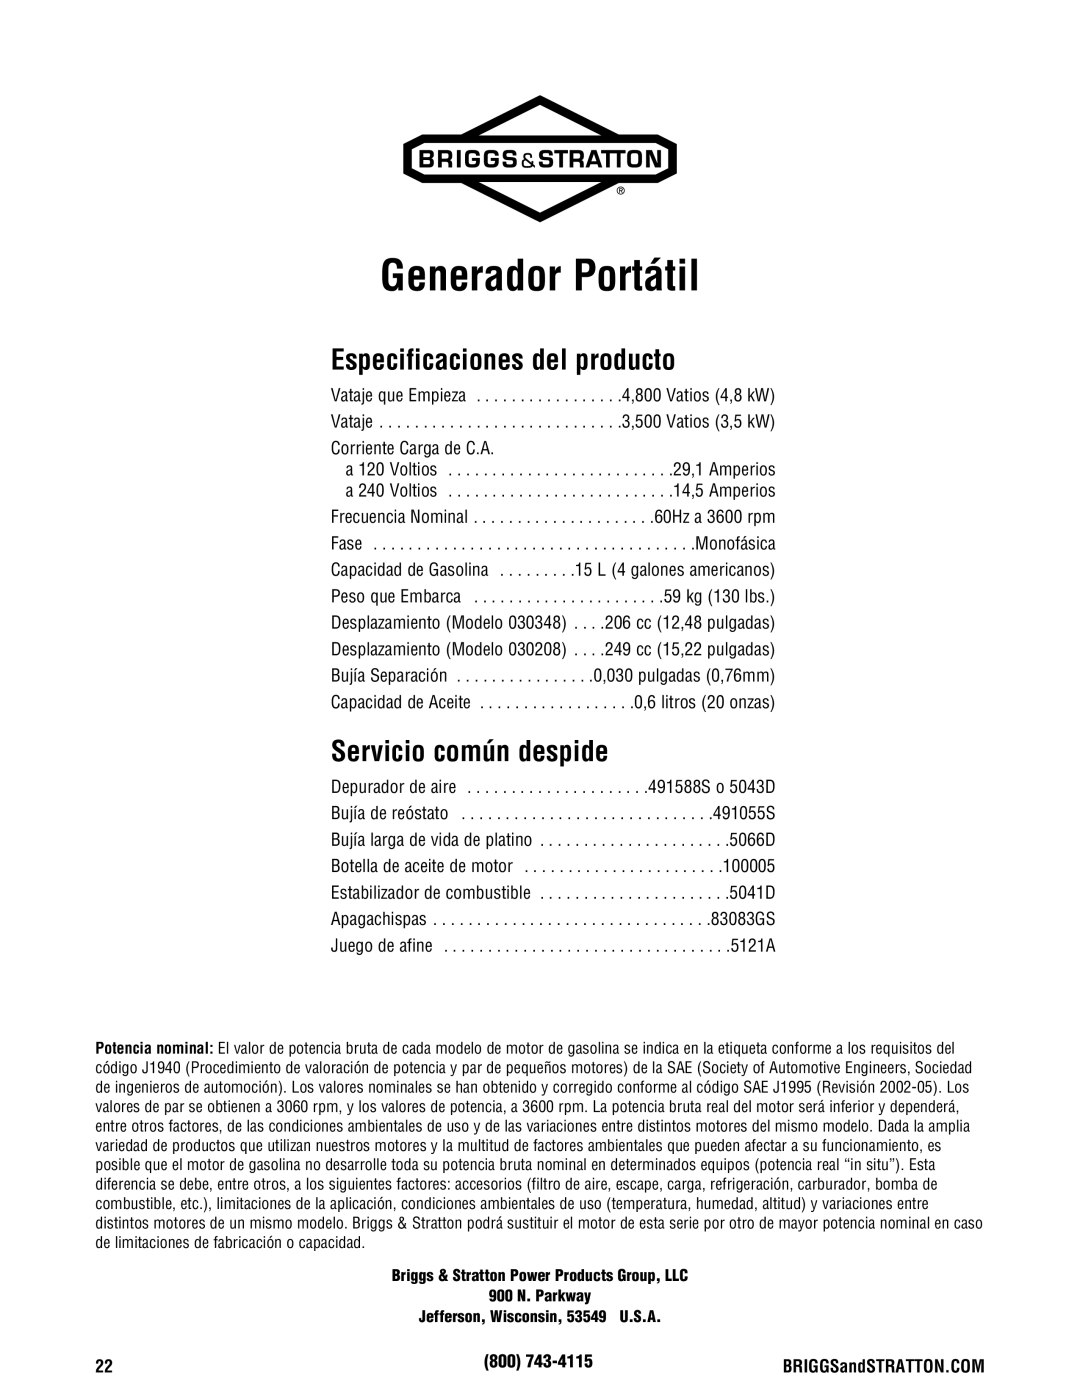 Briggs & Stratton 030248-0 manual Generador Portátil, Especificaciones del producto, Servicio común despide 